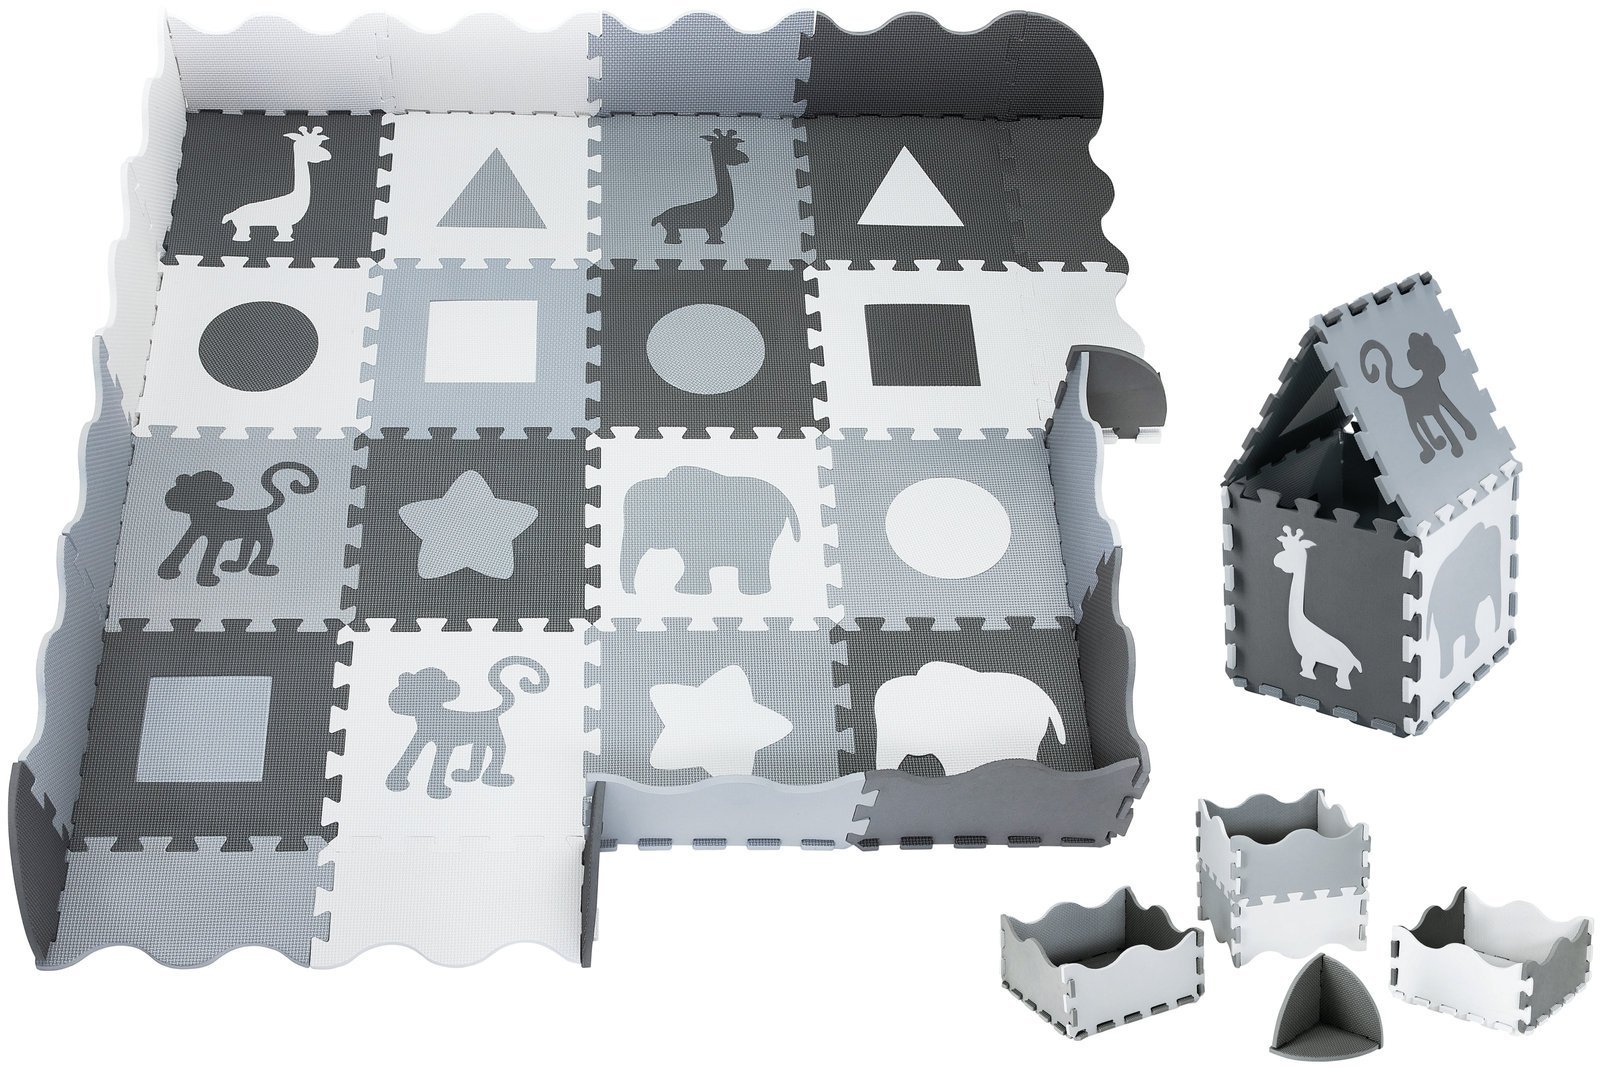 Tapis puzzle éducatif en mousse 90 x 90 x 1cm - mousse EVA - motif : animaux